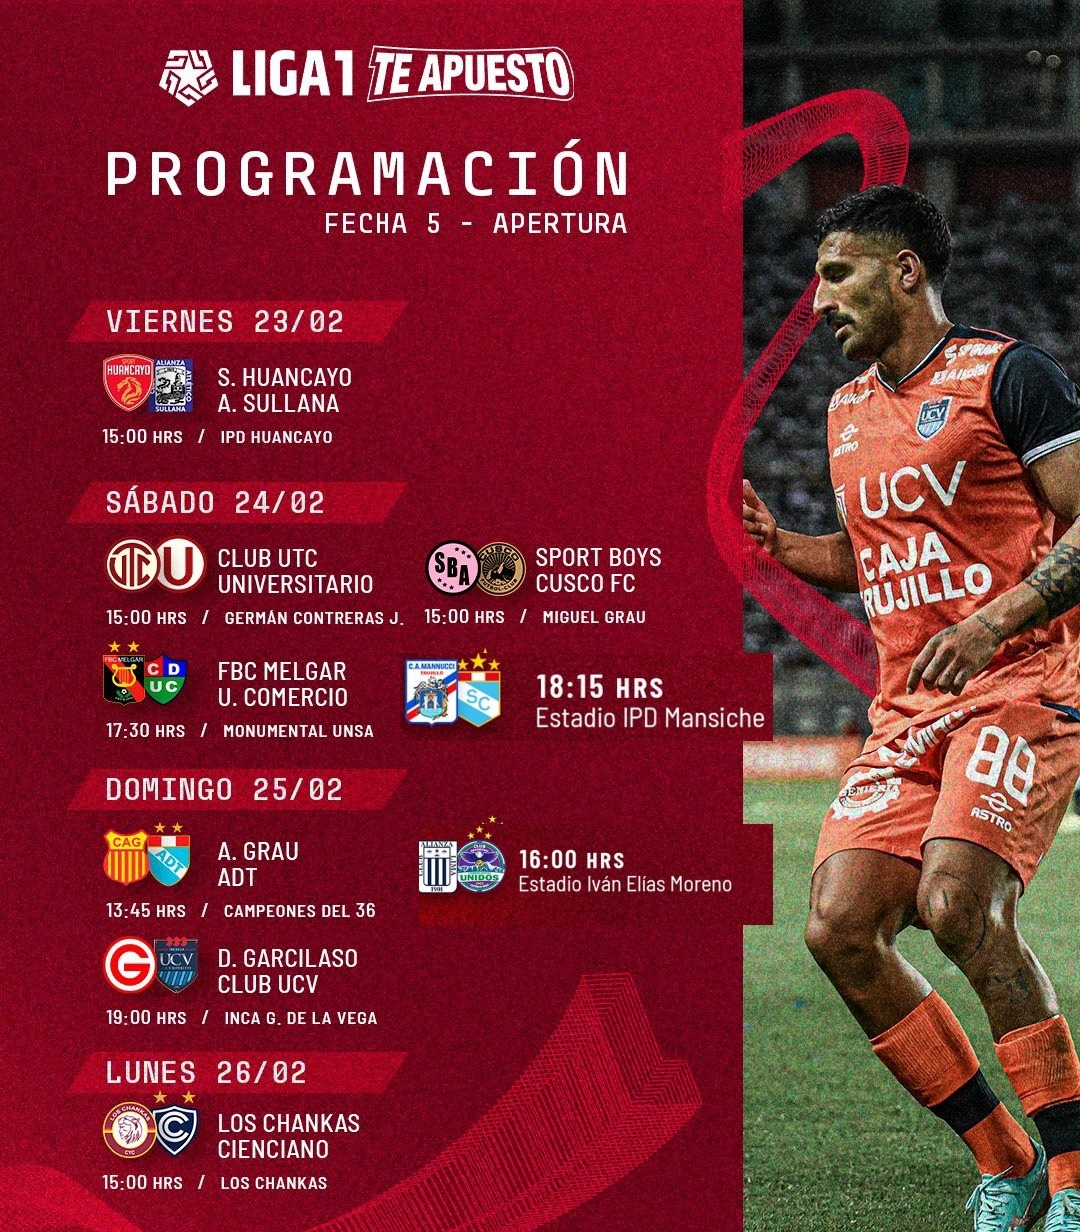 Liga 1 Conoce la programación de la Fecha 5 del Apertura América